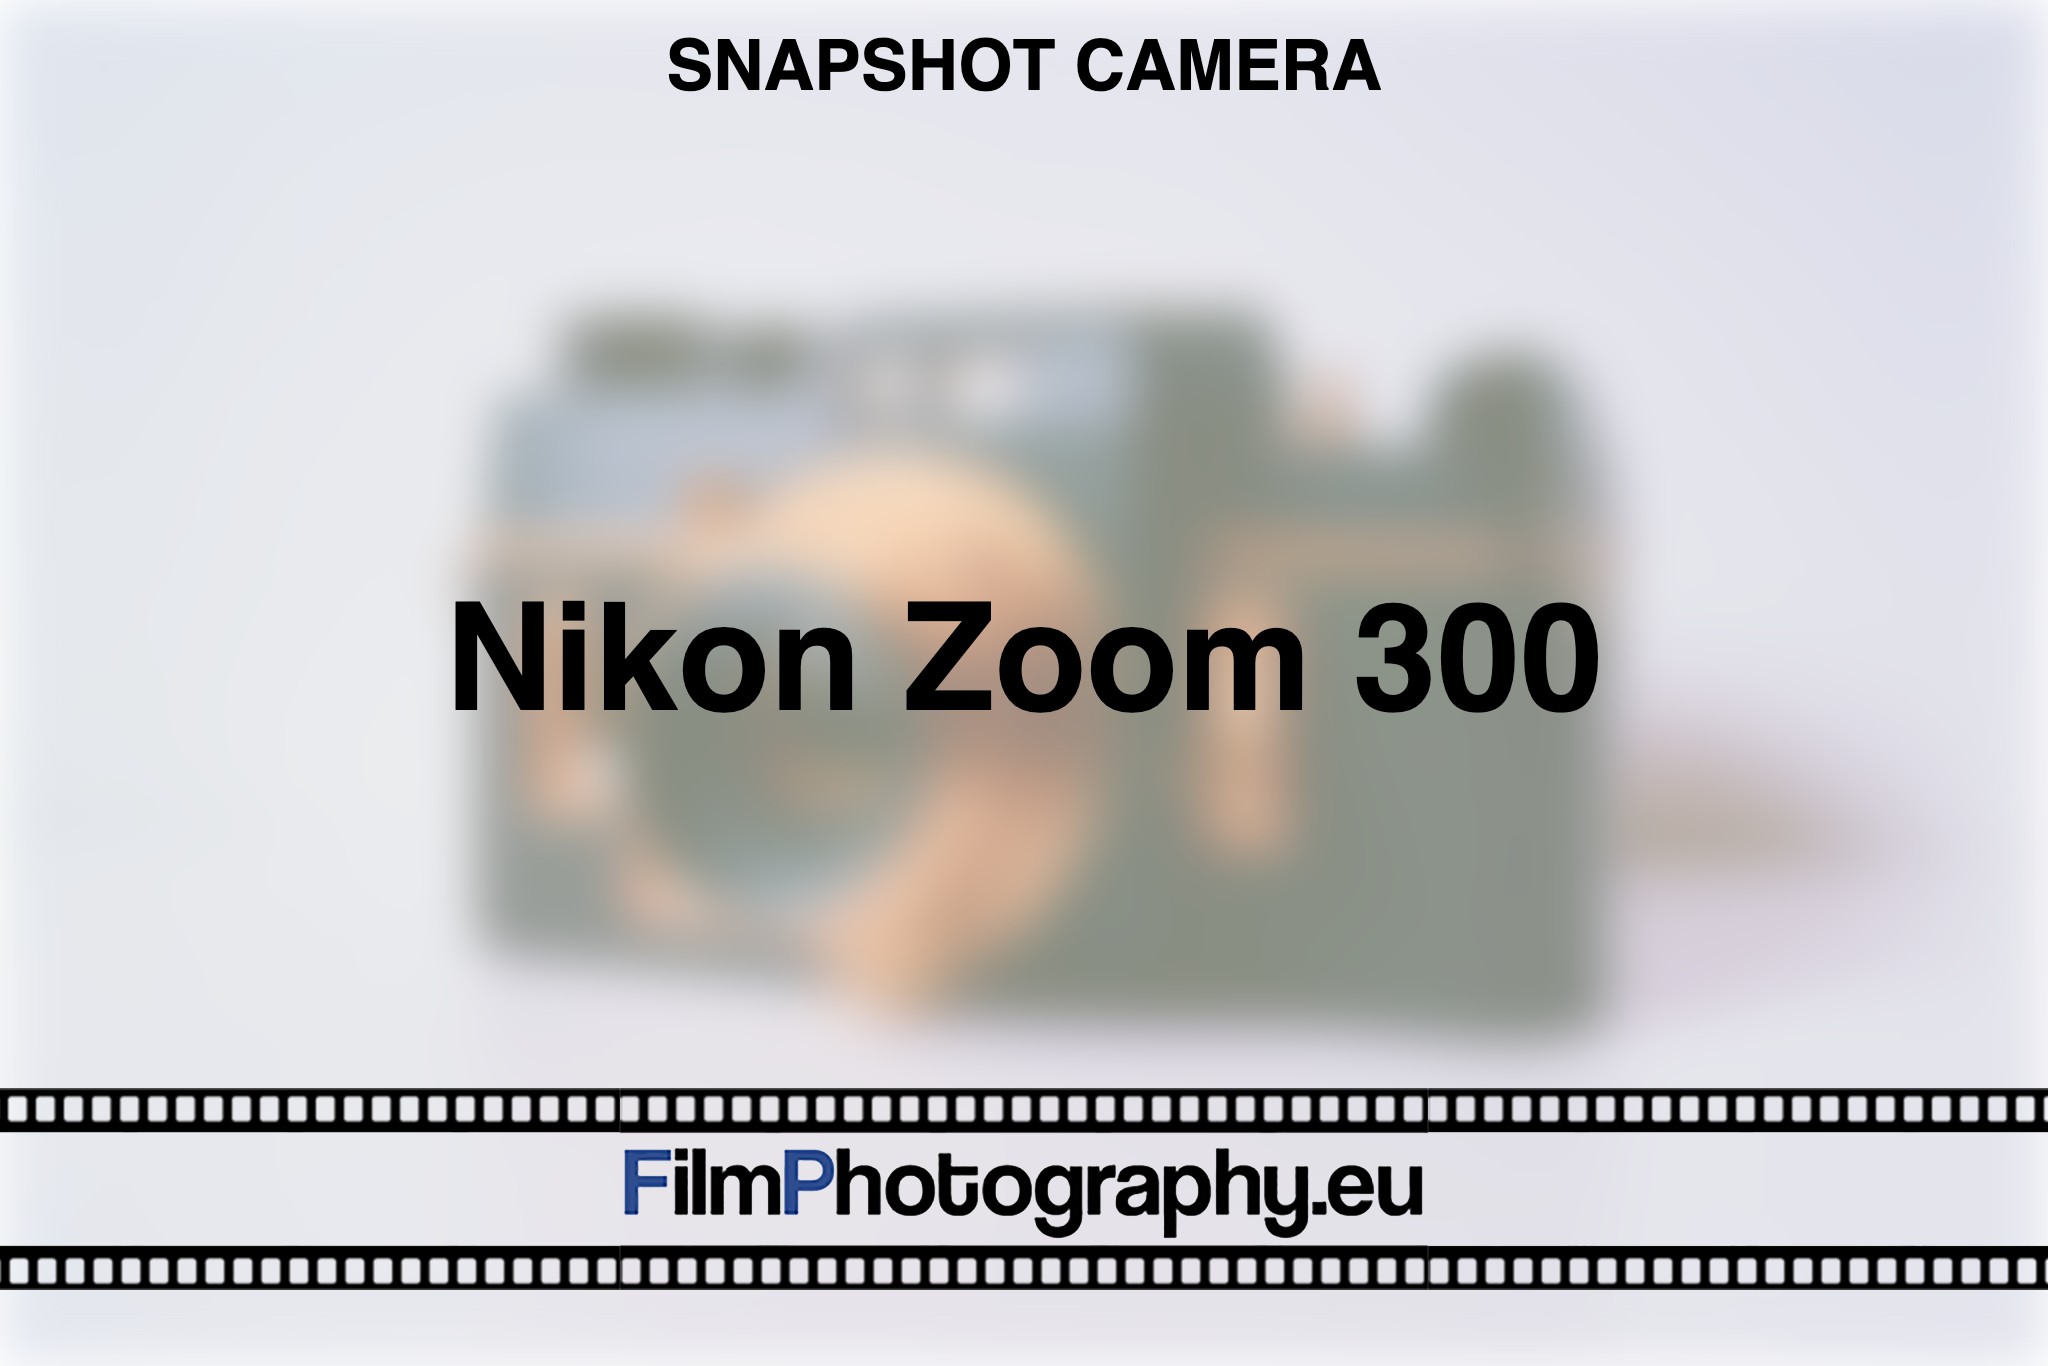 nikon-zoom-300-snapshot-camera-bnv